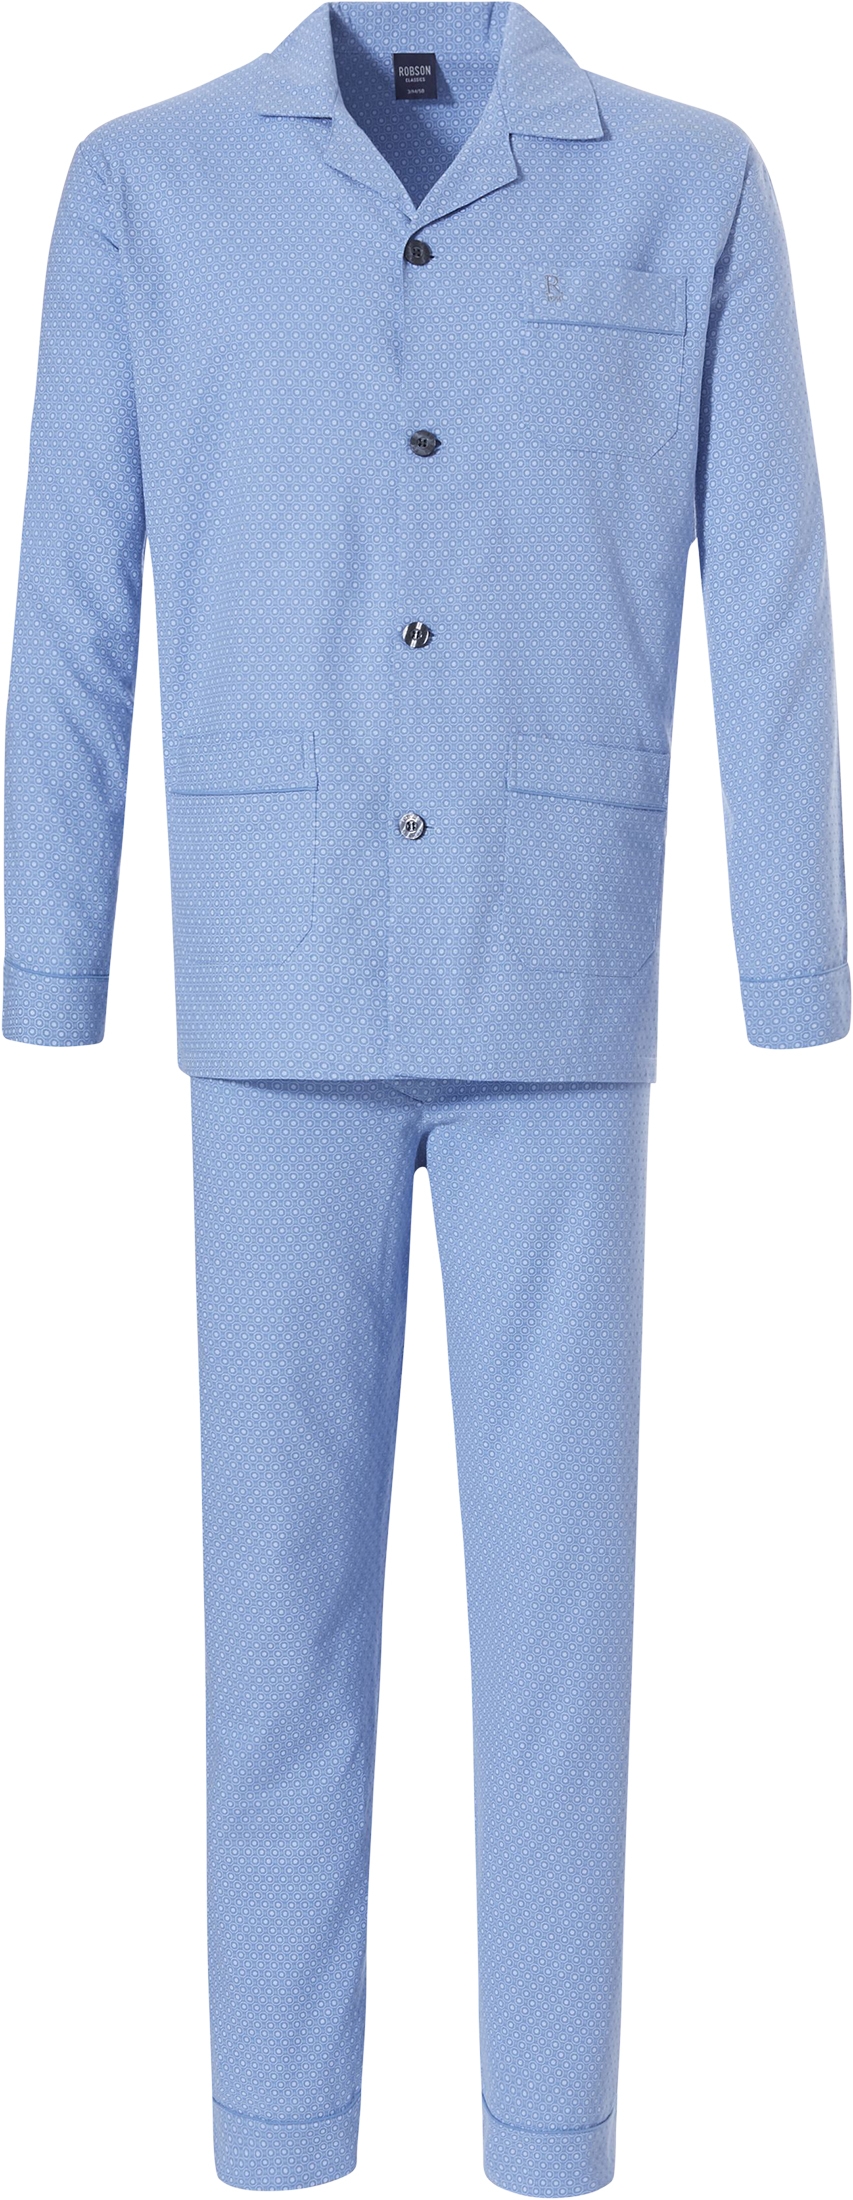 Heren pyjama Robson doorknoop 27192-701-6 - Blauw - 68